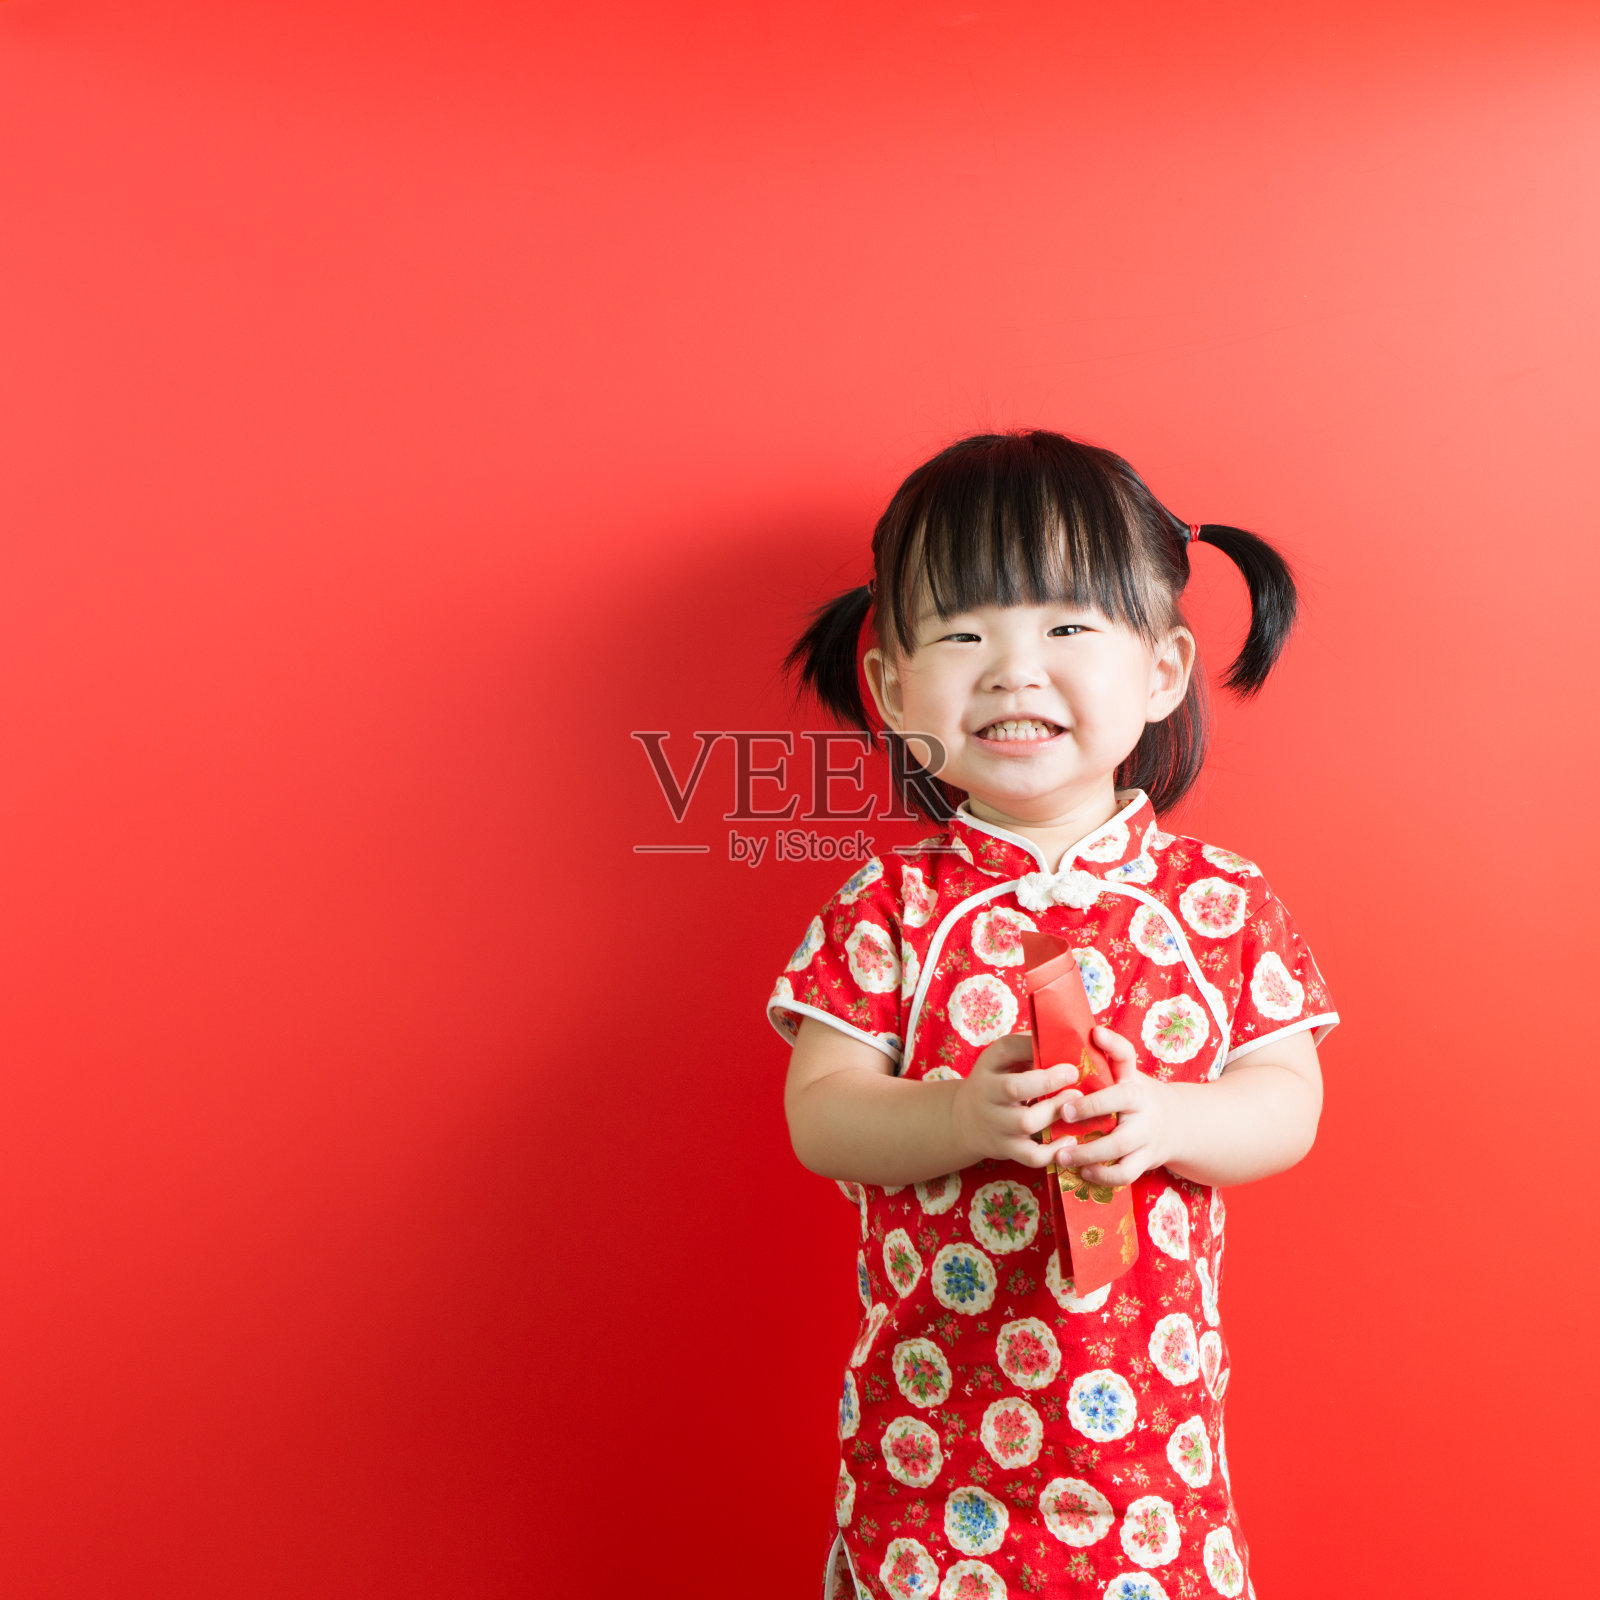 中国新年主题照片摄影图片